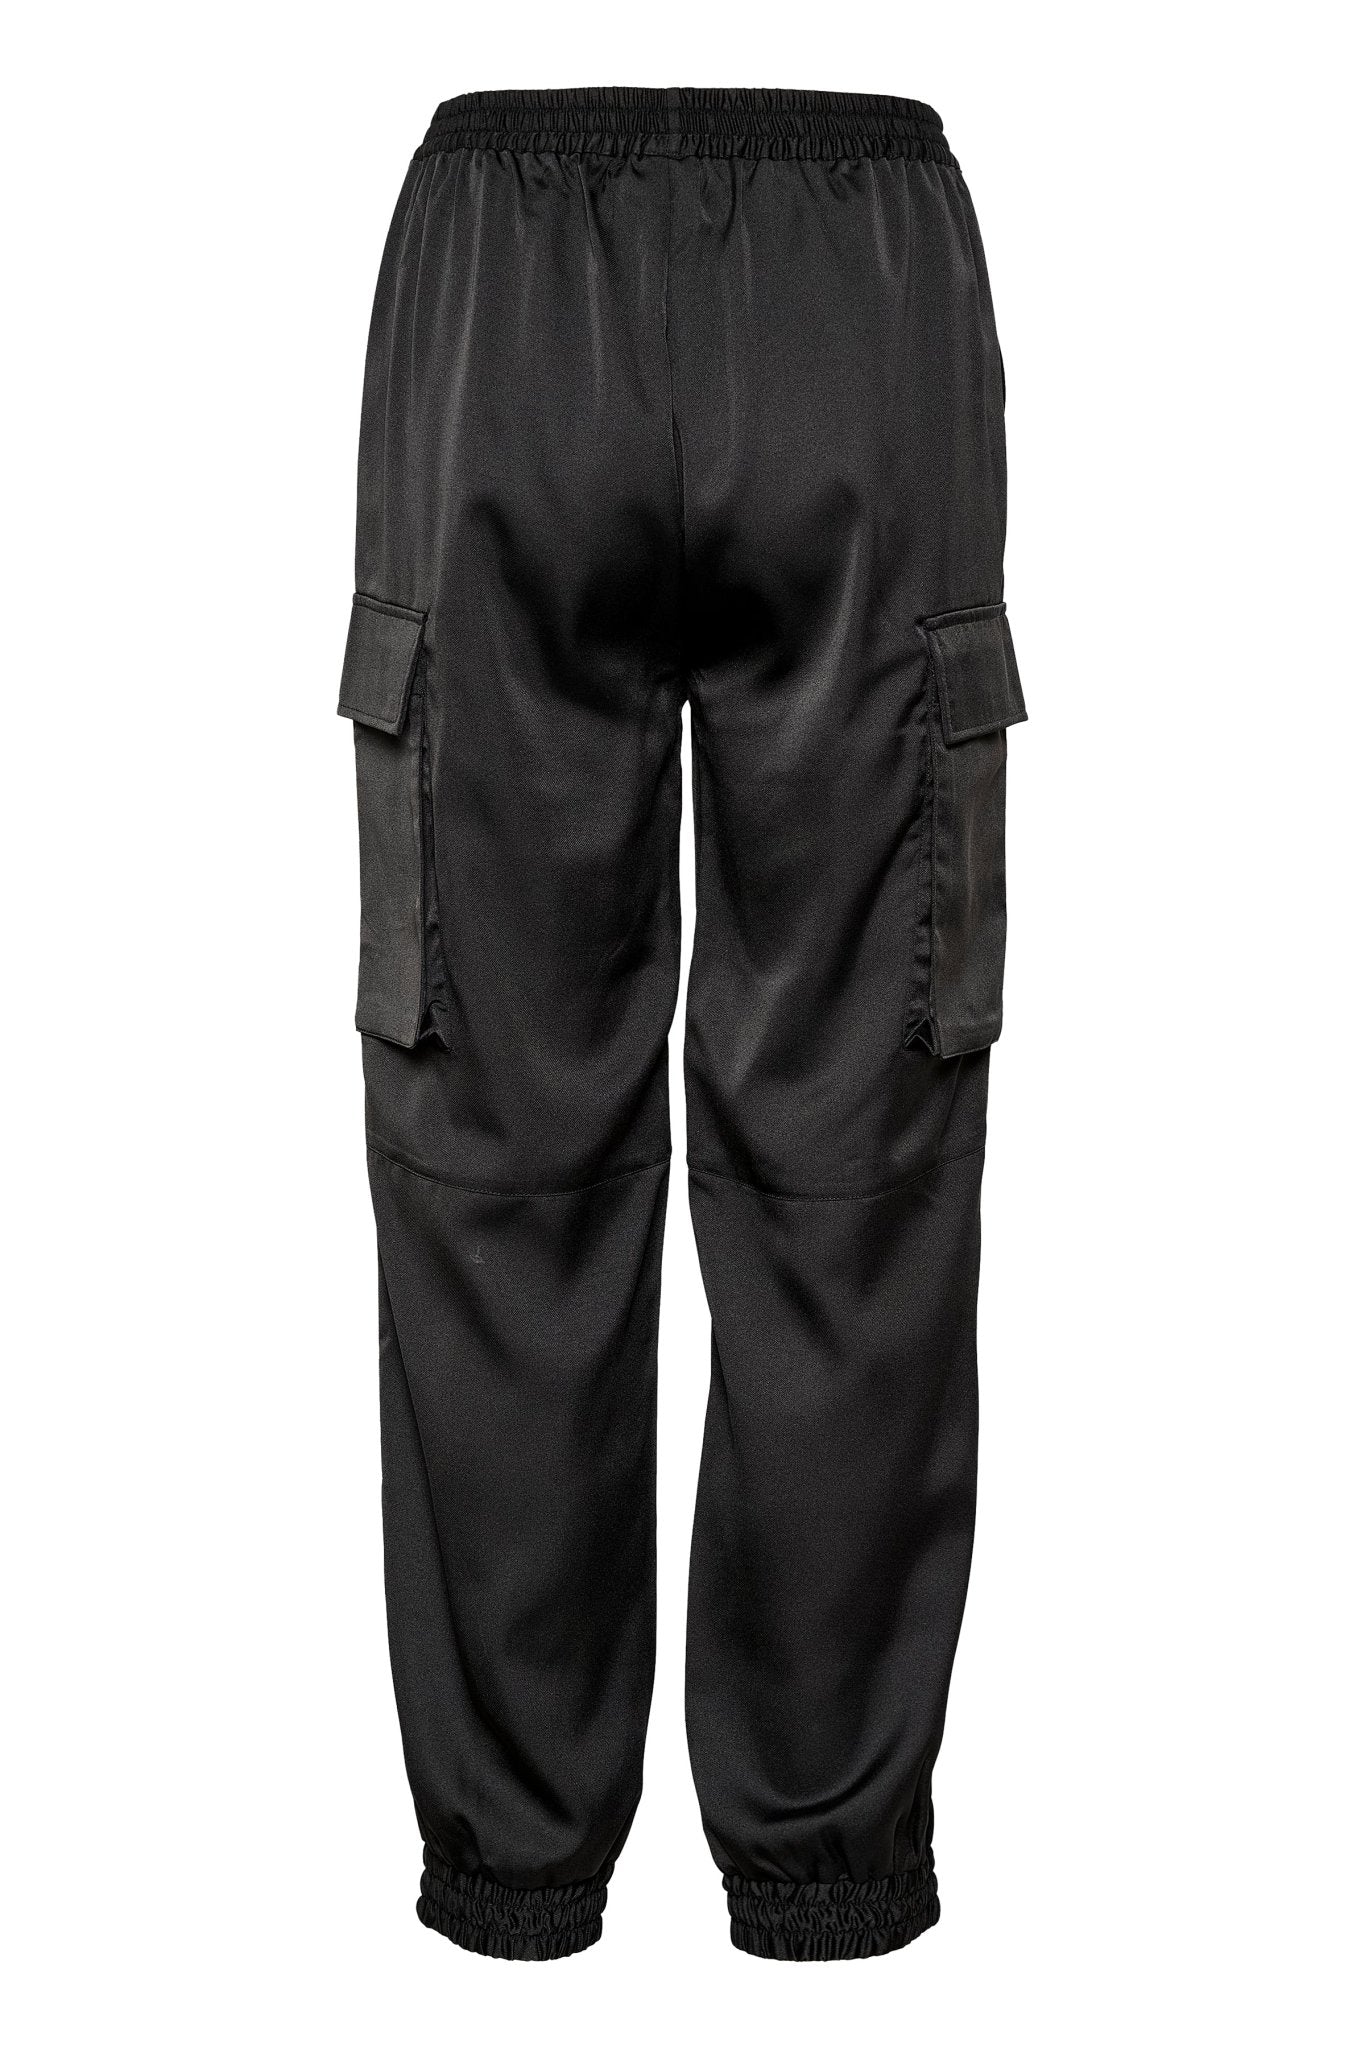 Bianca Cargo Trousers by Saint Tropez - Black - Blue Sky Fashions & Lingerie